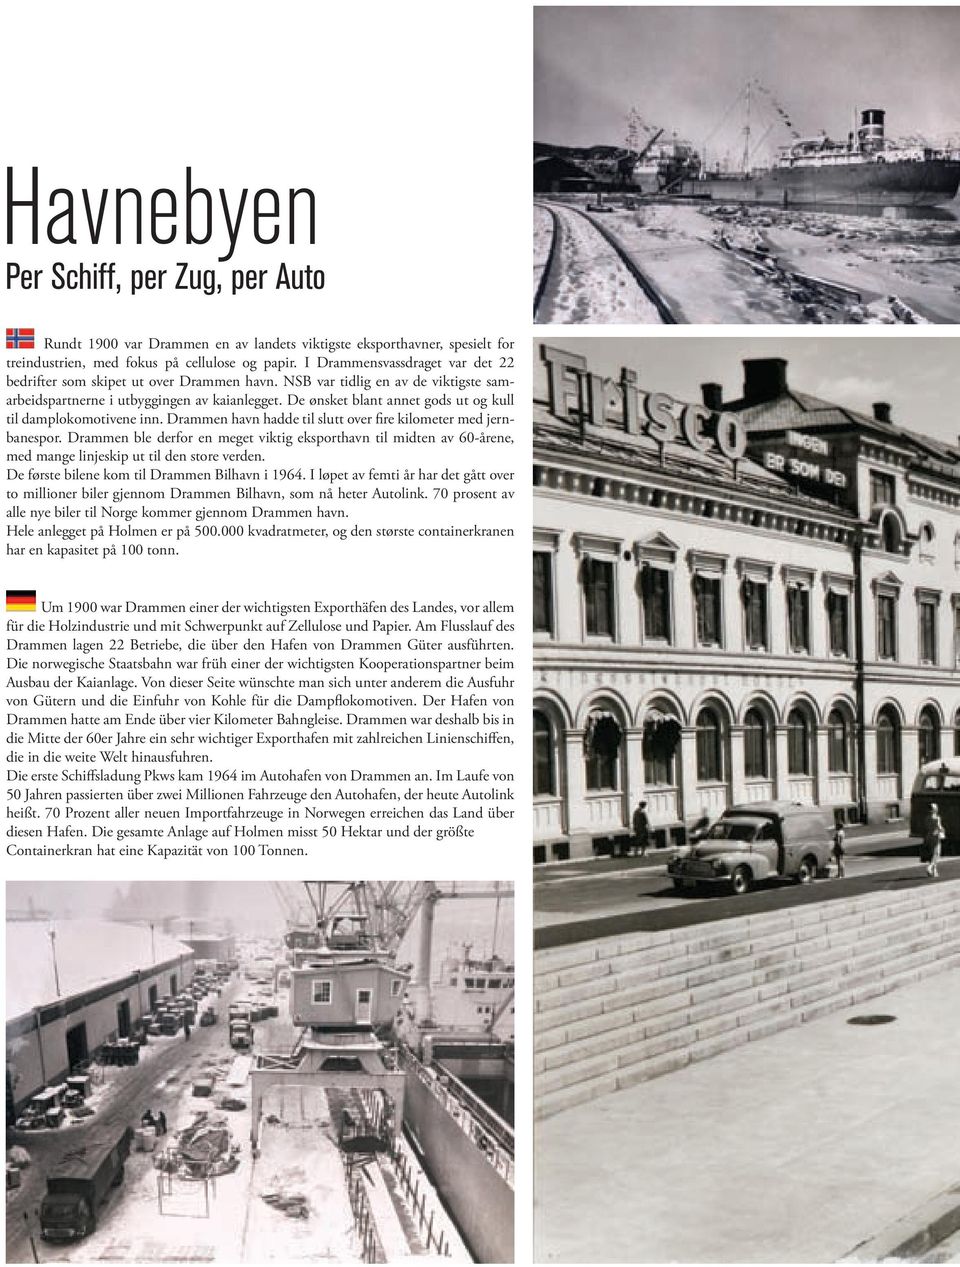 De ønsket blant annet gods ut og kull til damplokomotivene inn. Drammen havn hadde til slutt over fire kilometer med jernbanespor.